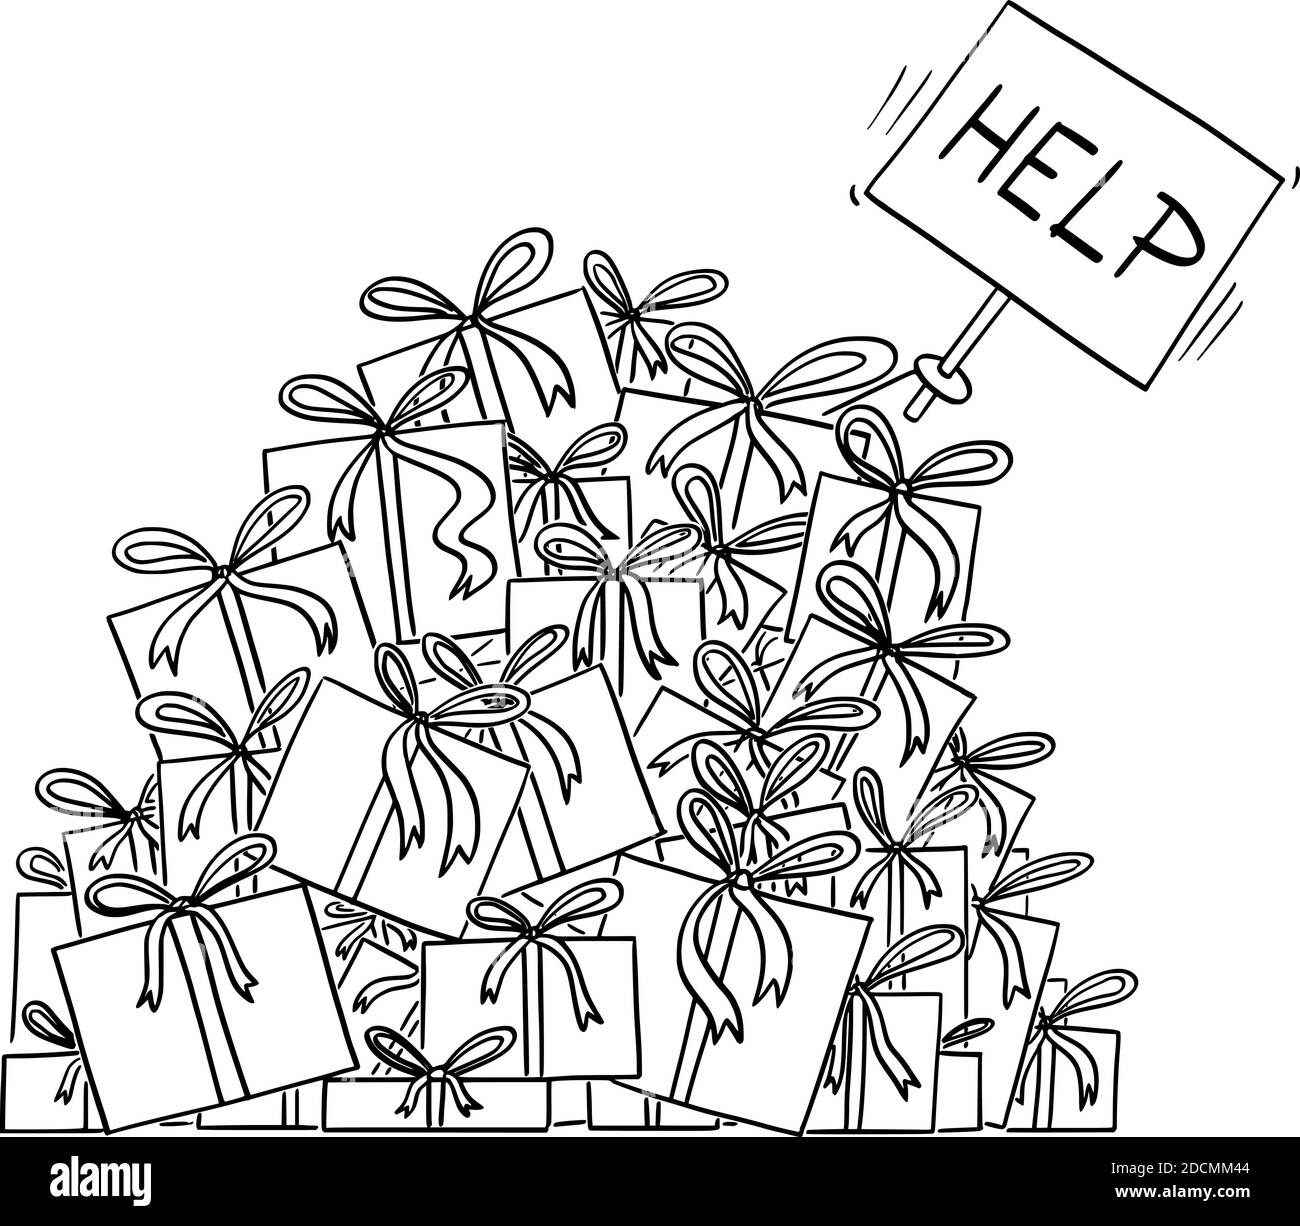 Dessin ou illustration noir et blanc de vecteur de dessin animé d'une grande pile de cadeaux ou cadeaux de noël. La main dépasse avec le panneau d'aide. Illustration de Vecteur